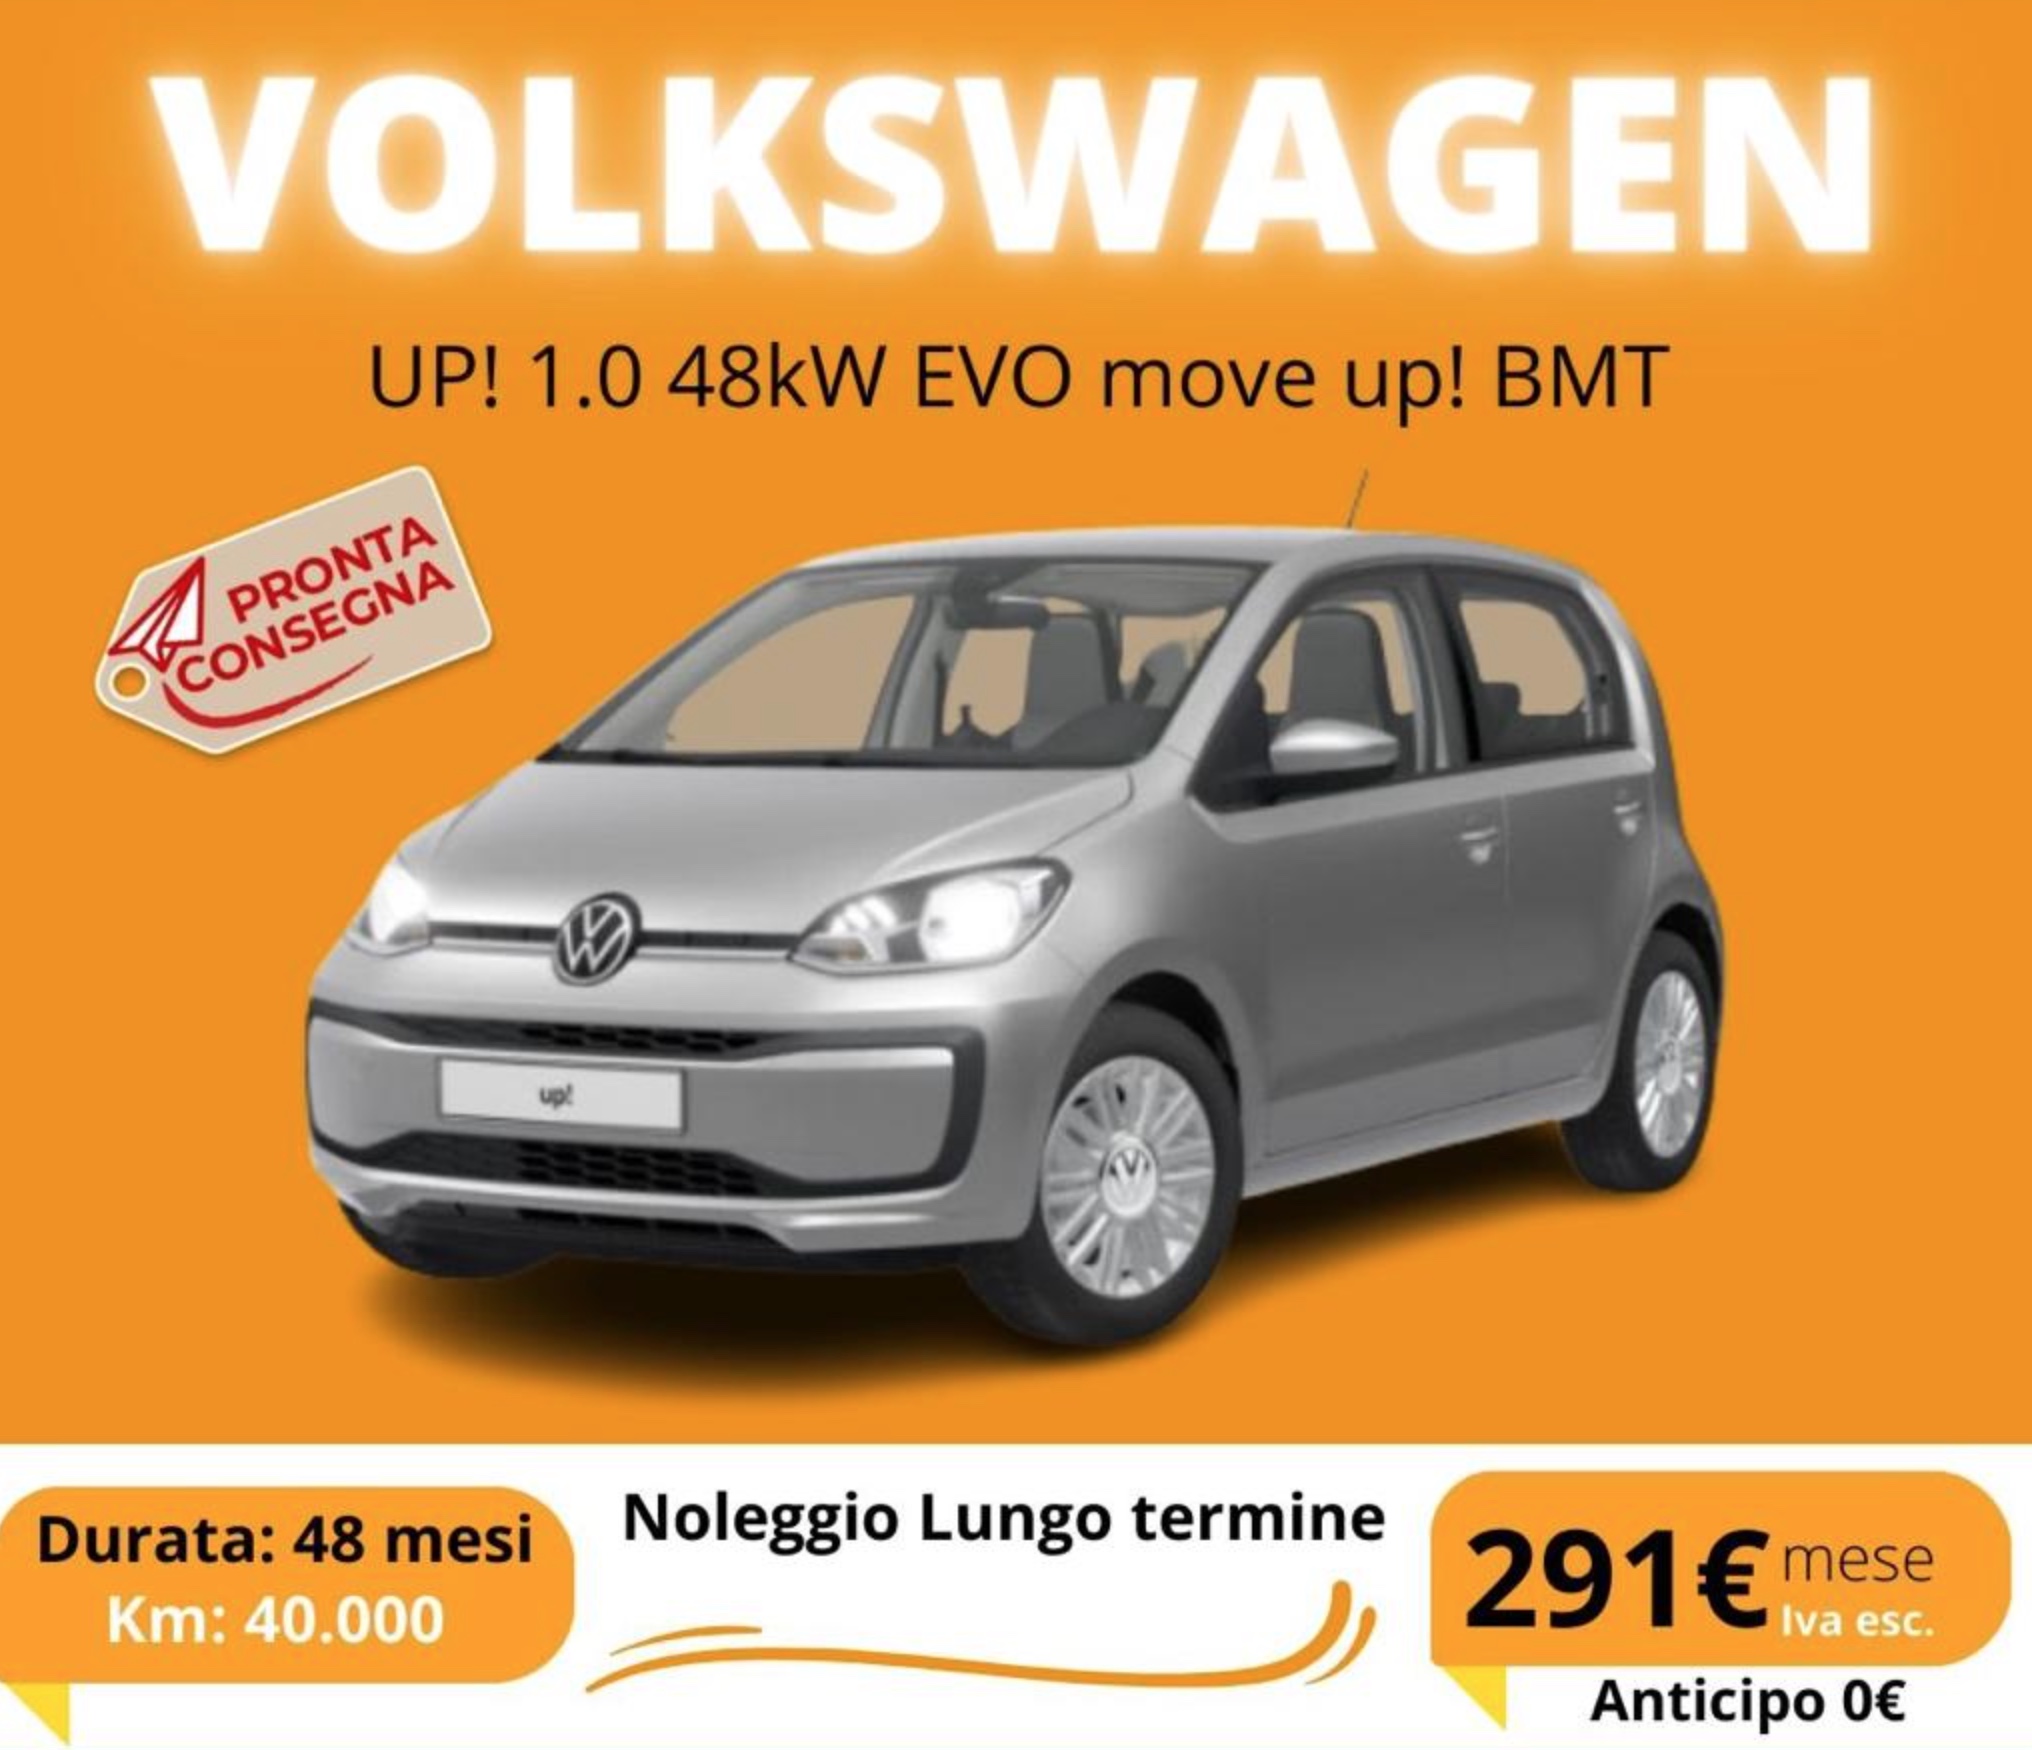 Volkswagen UP